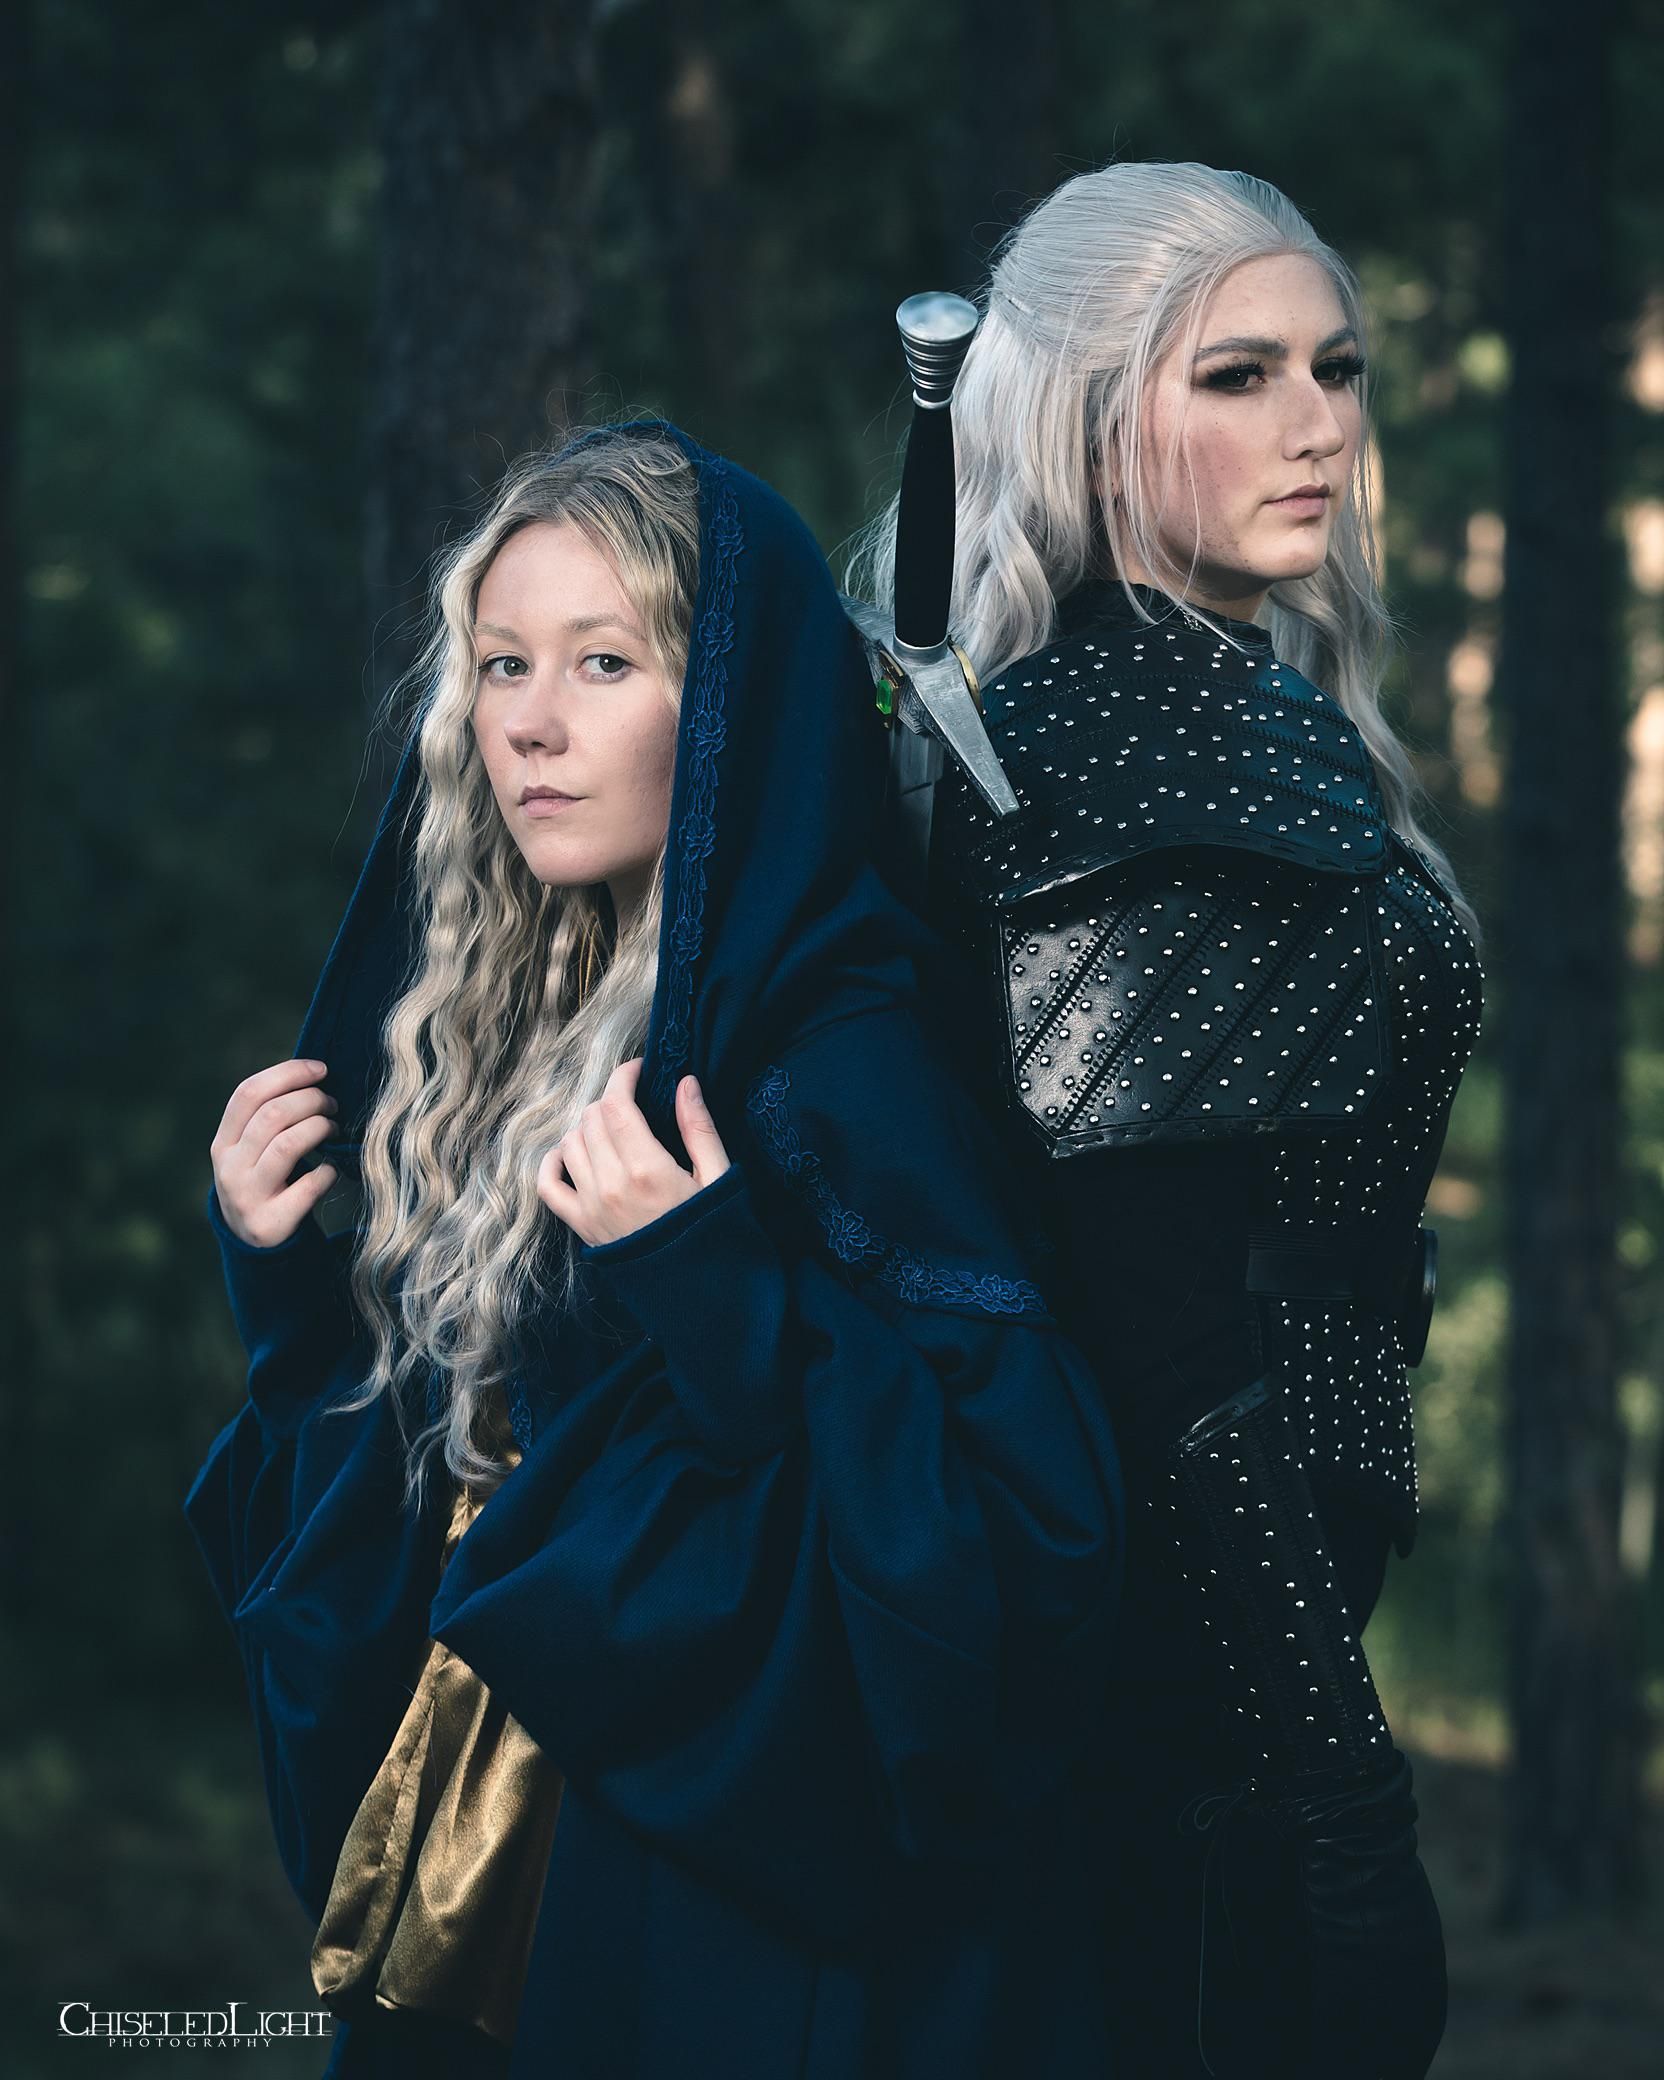 Косплей на Геральта и Цири из сериала The Witcher от Netflix. Источник: instagram.com/laurendoescosplay. Авторы: Loren и Shersten.